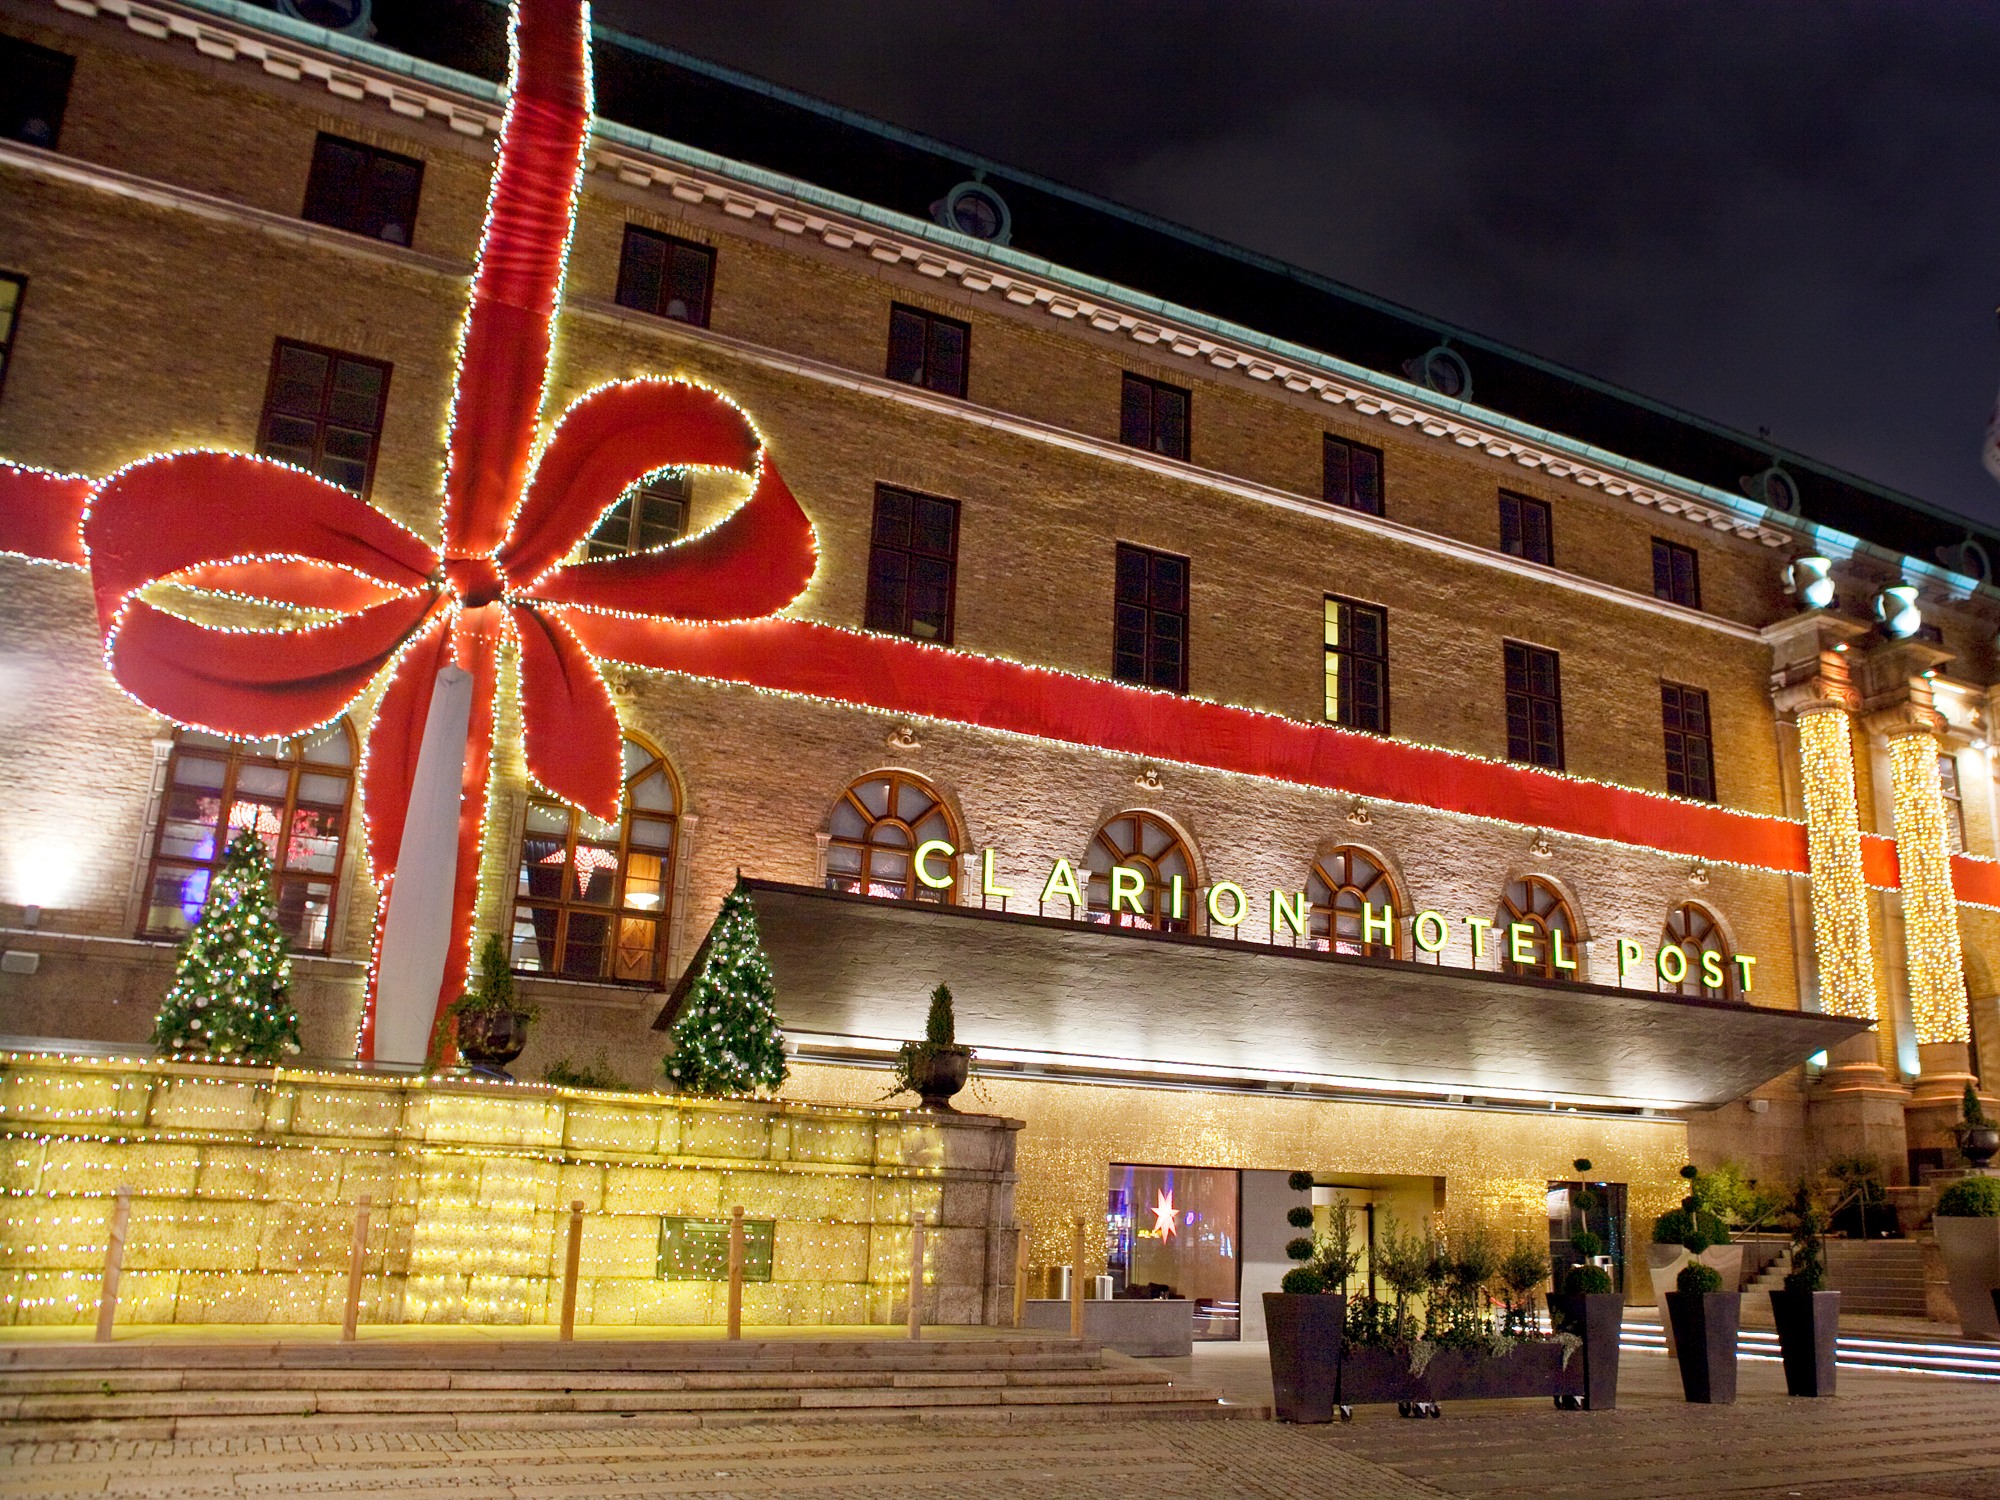 En lysande julrosett dekorerar fasaden på Clarion Hotel Post i Göteborg.